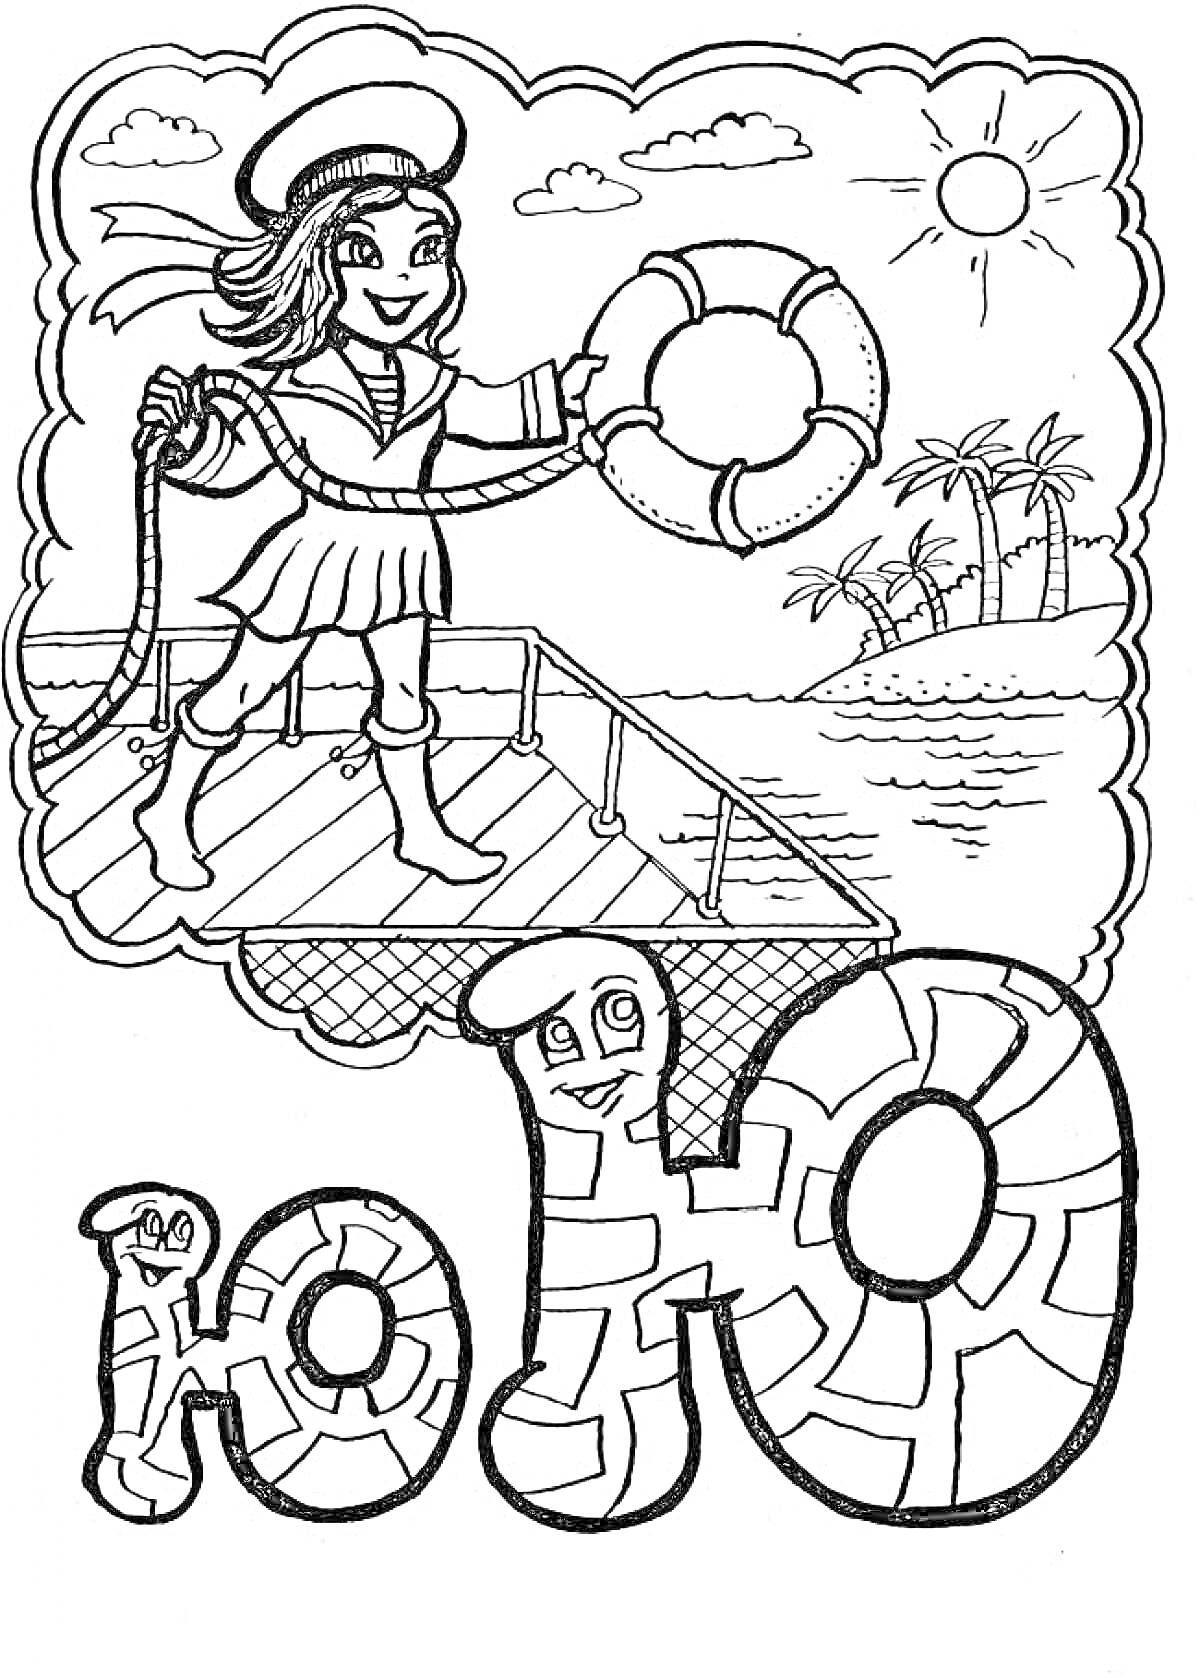 Девочка-матрос, держащая спасательный круг, и буква Ю с морским пейзажем